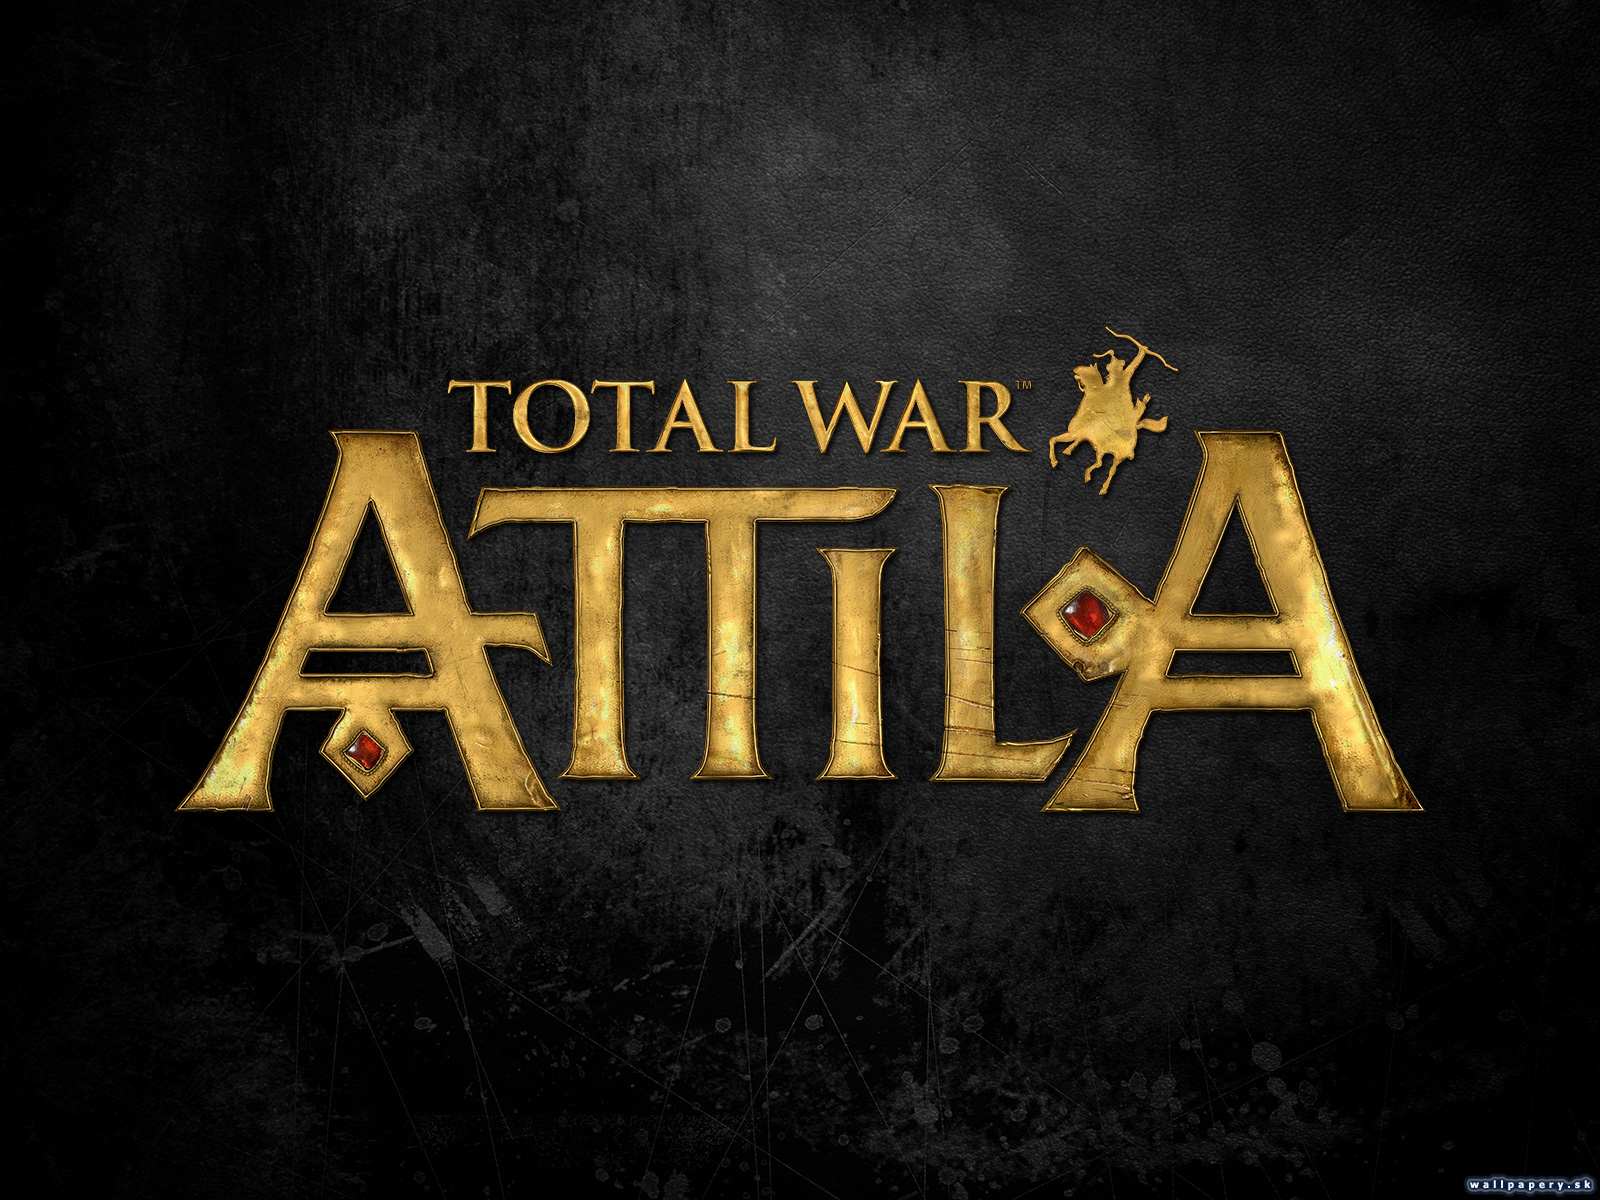 Total War: Attila - wallpaper 3